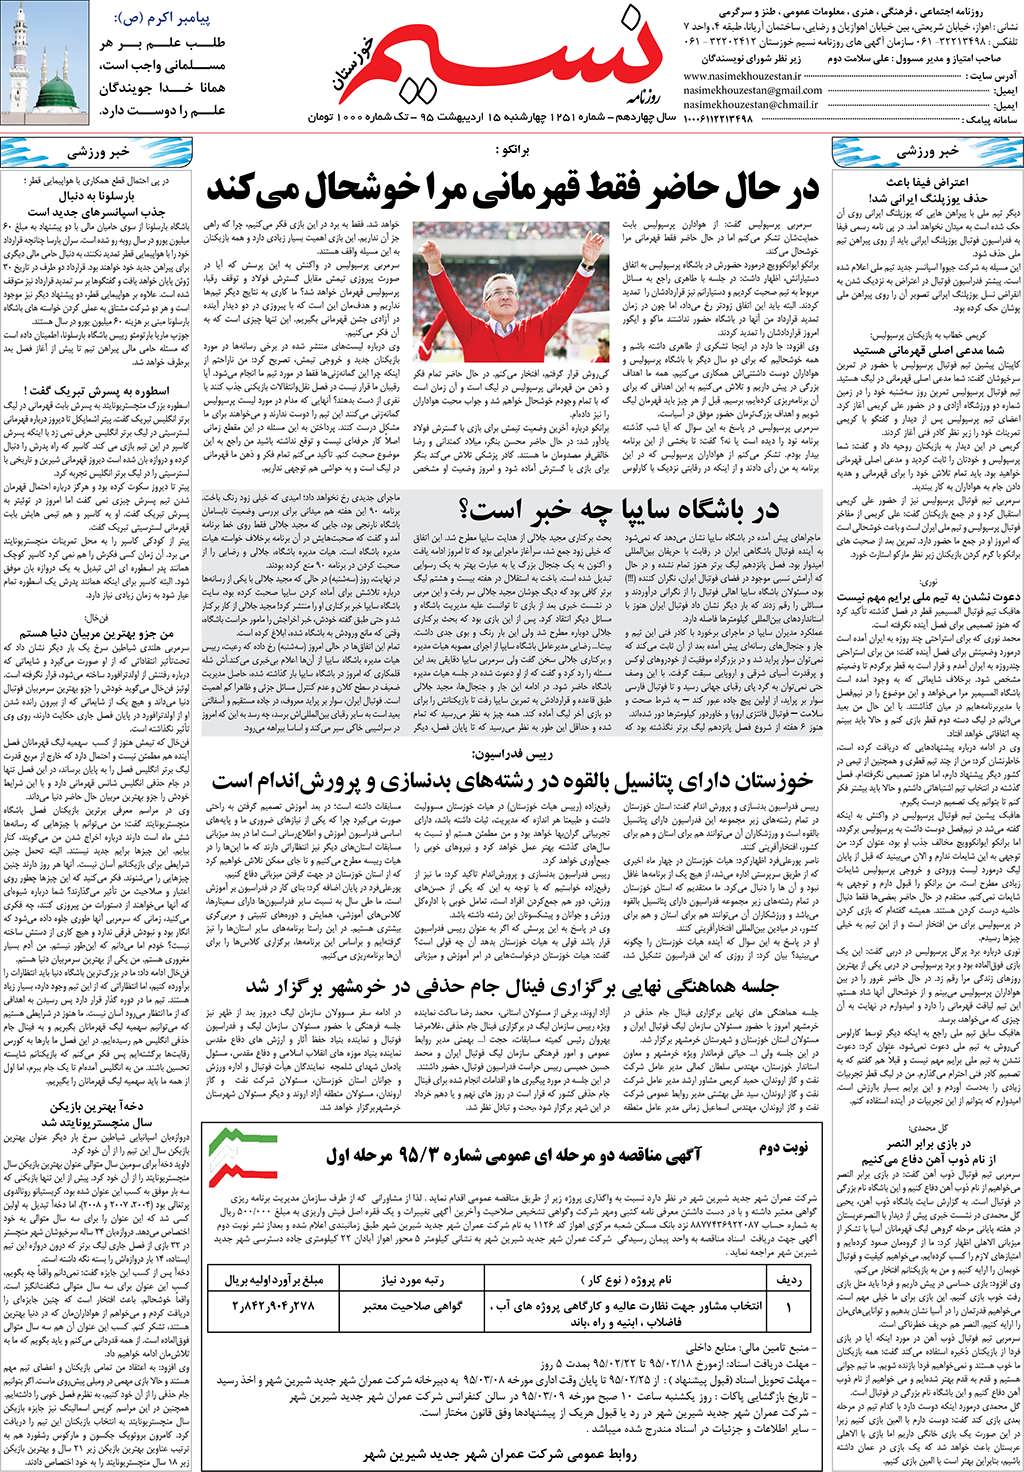 صفحه آخر روزنامه نسیم شماره 1251